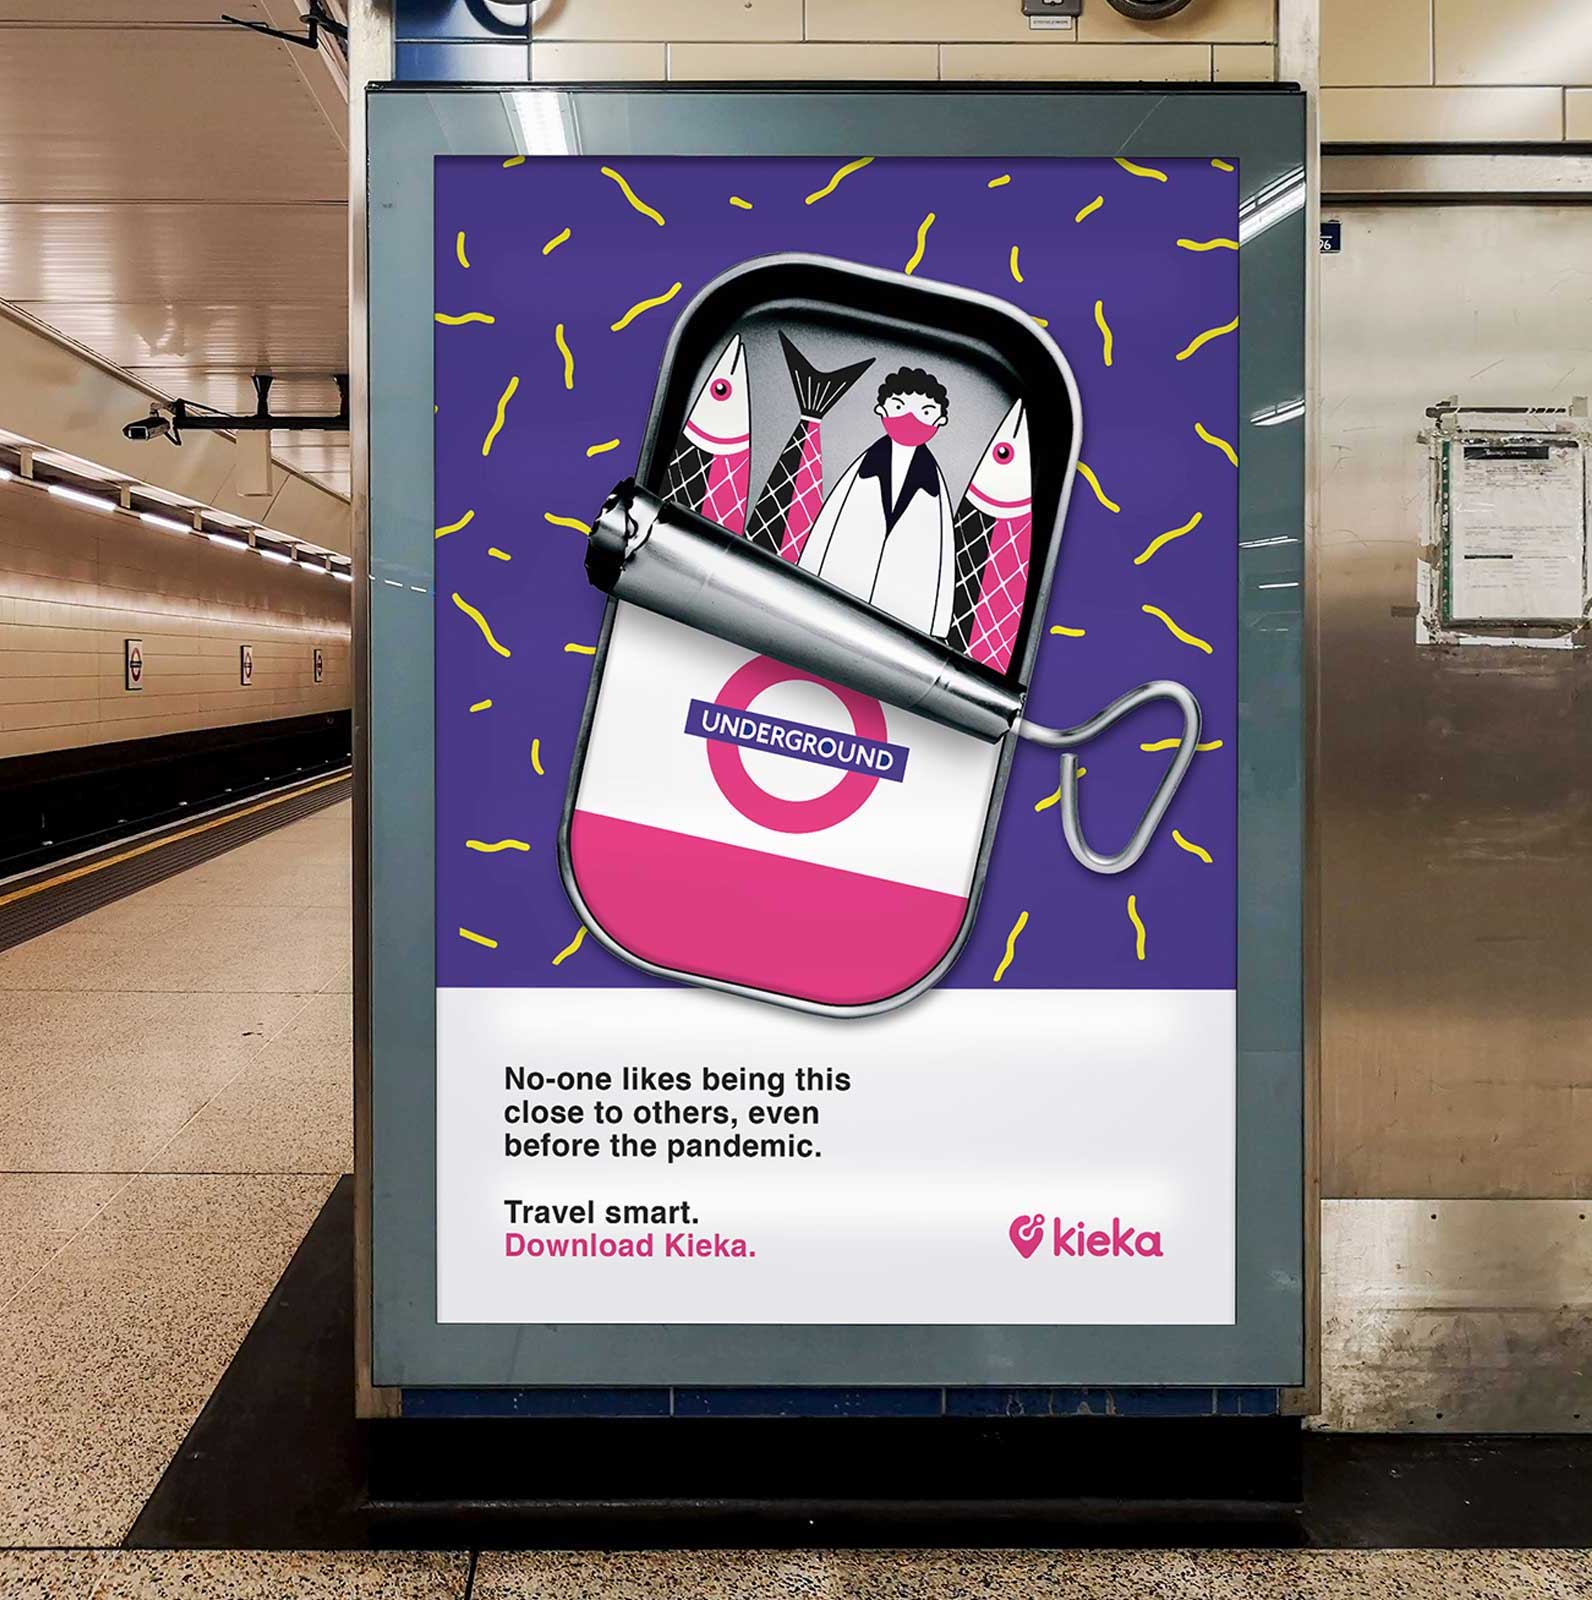 Mockup of design in tube station